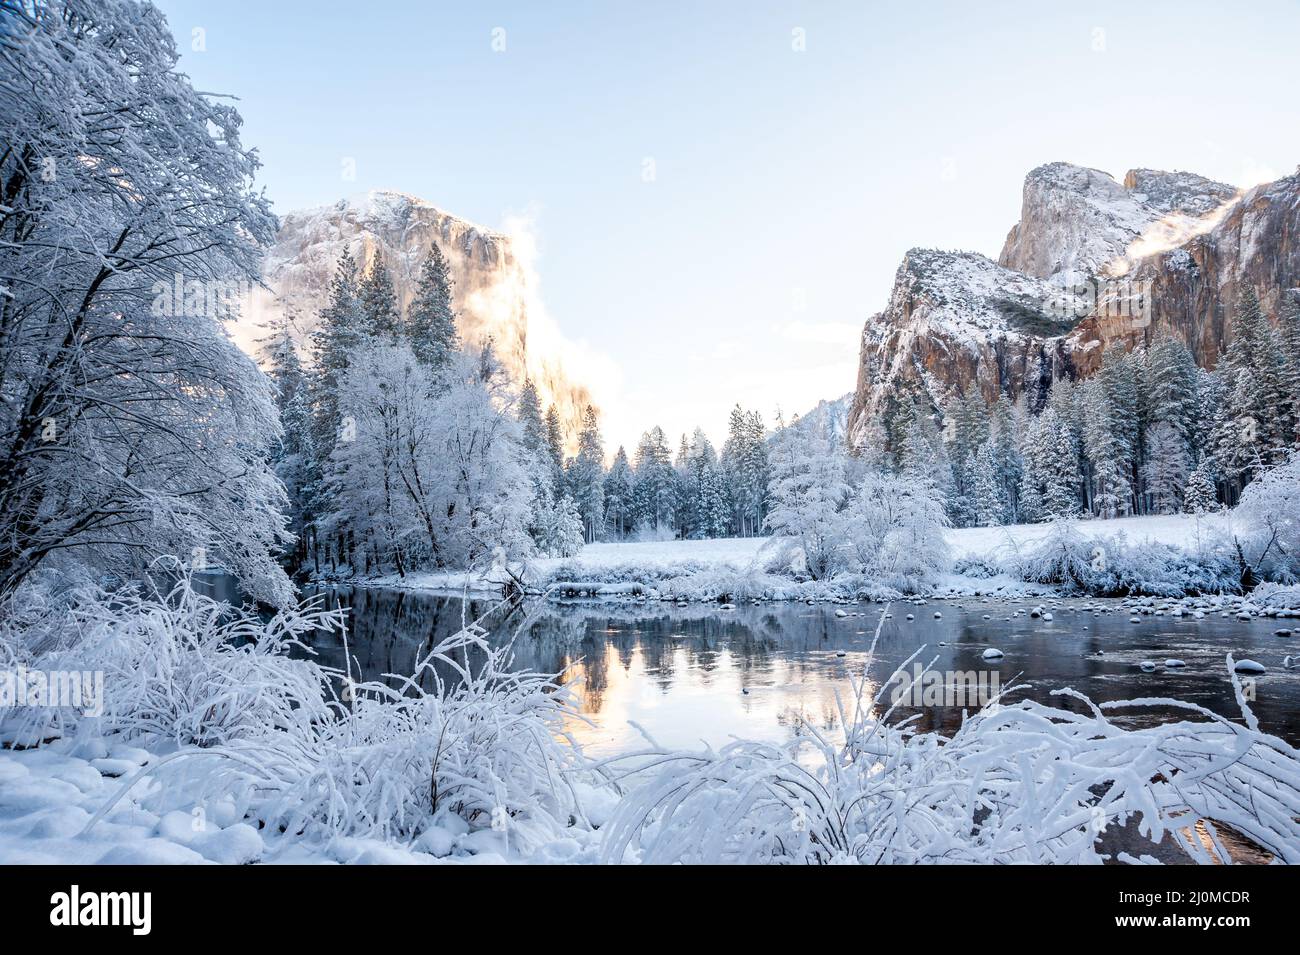 Winter snow scene in Yosemite National Park Stock Photo